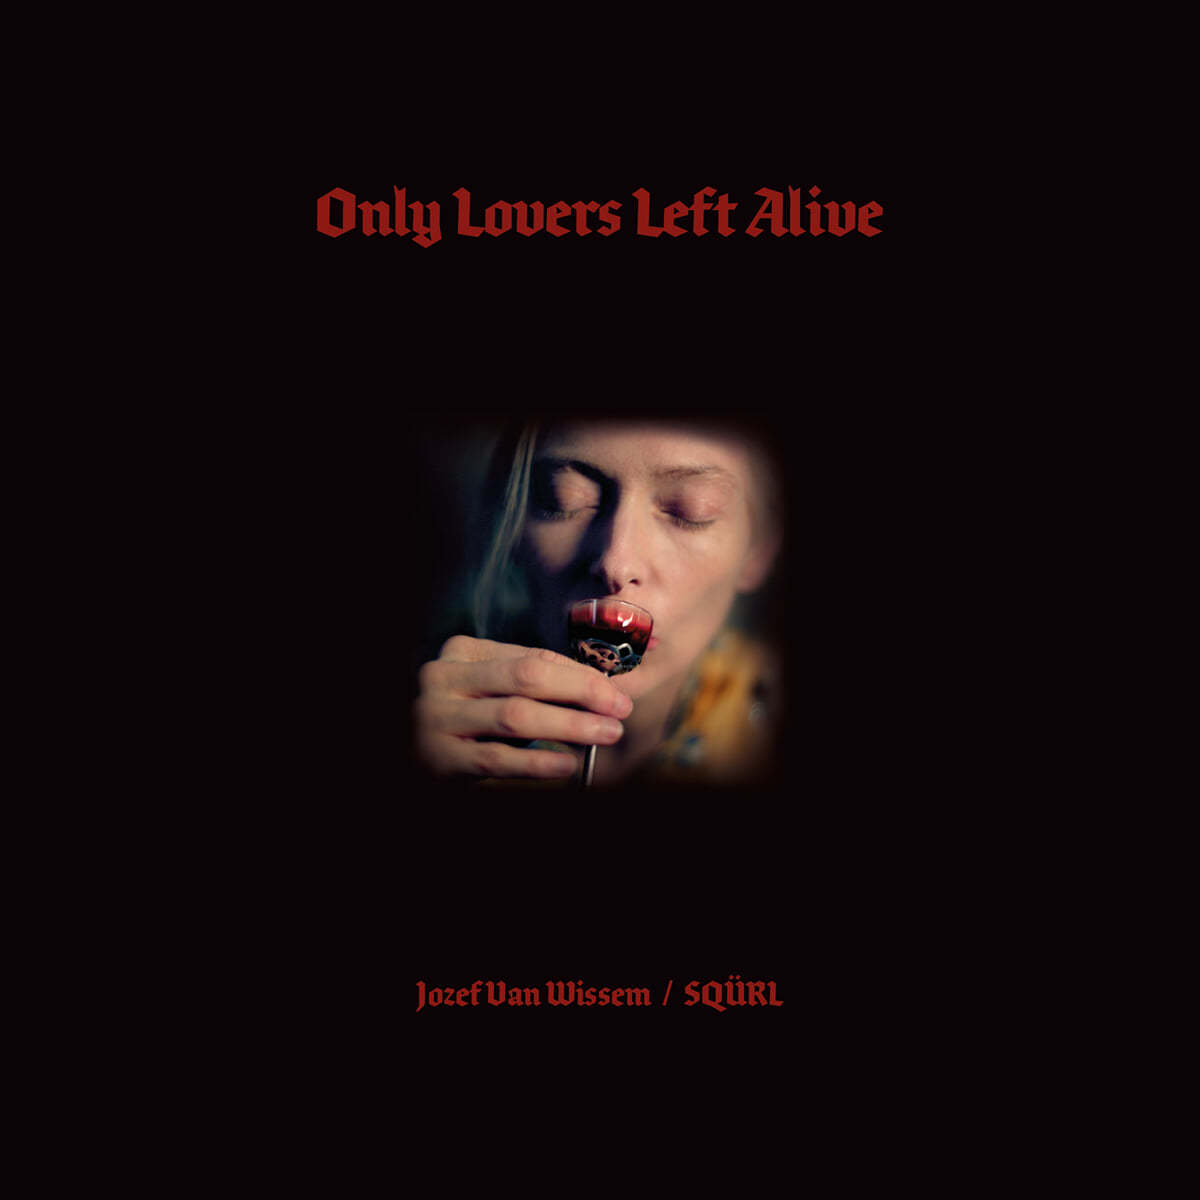 오직 사랑하는 이들만이 살아남는다 영화음악 (Only Lovers Left Alive OST by SQURL / Jozef Van Wissem) [투명 &amp; 레드 스플래터 컬러 2LP] 